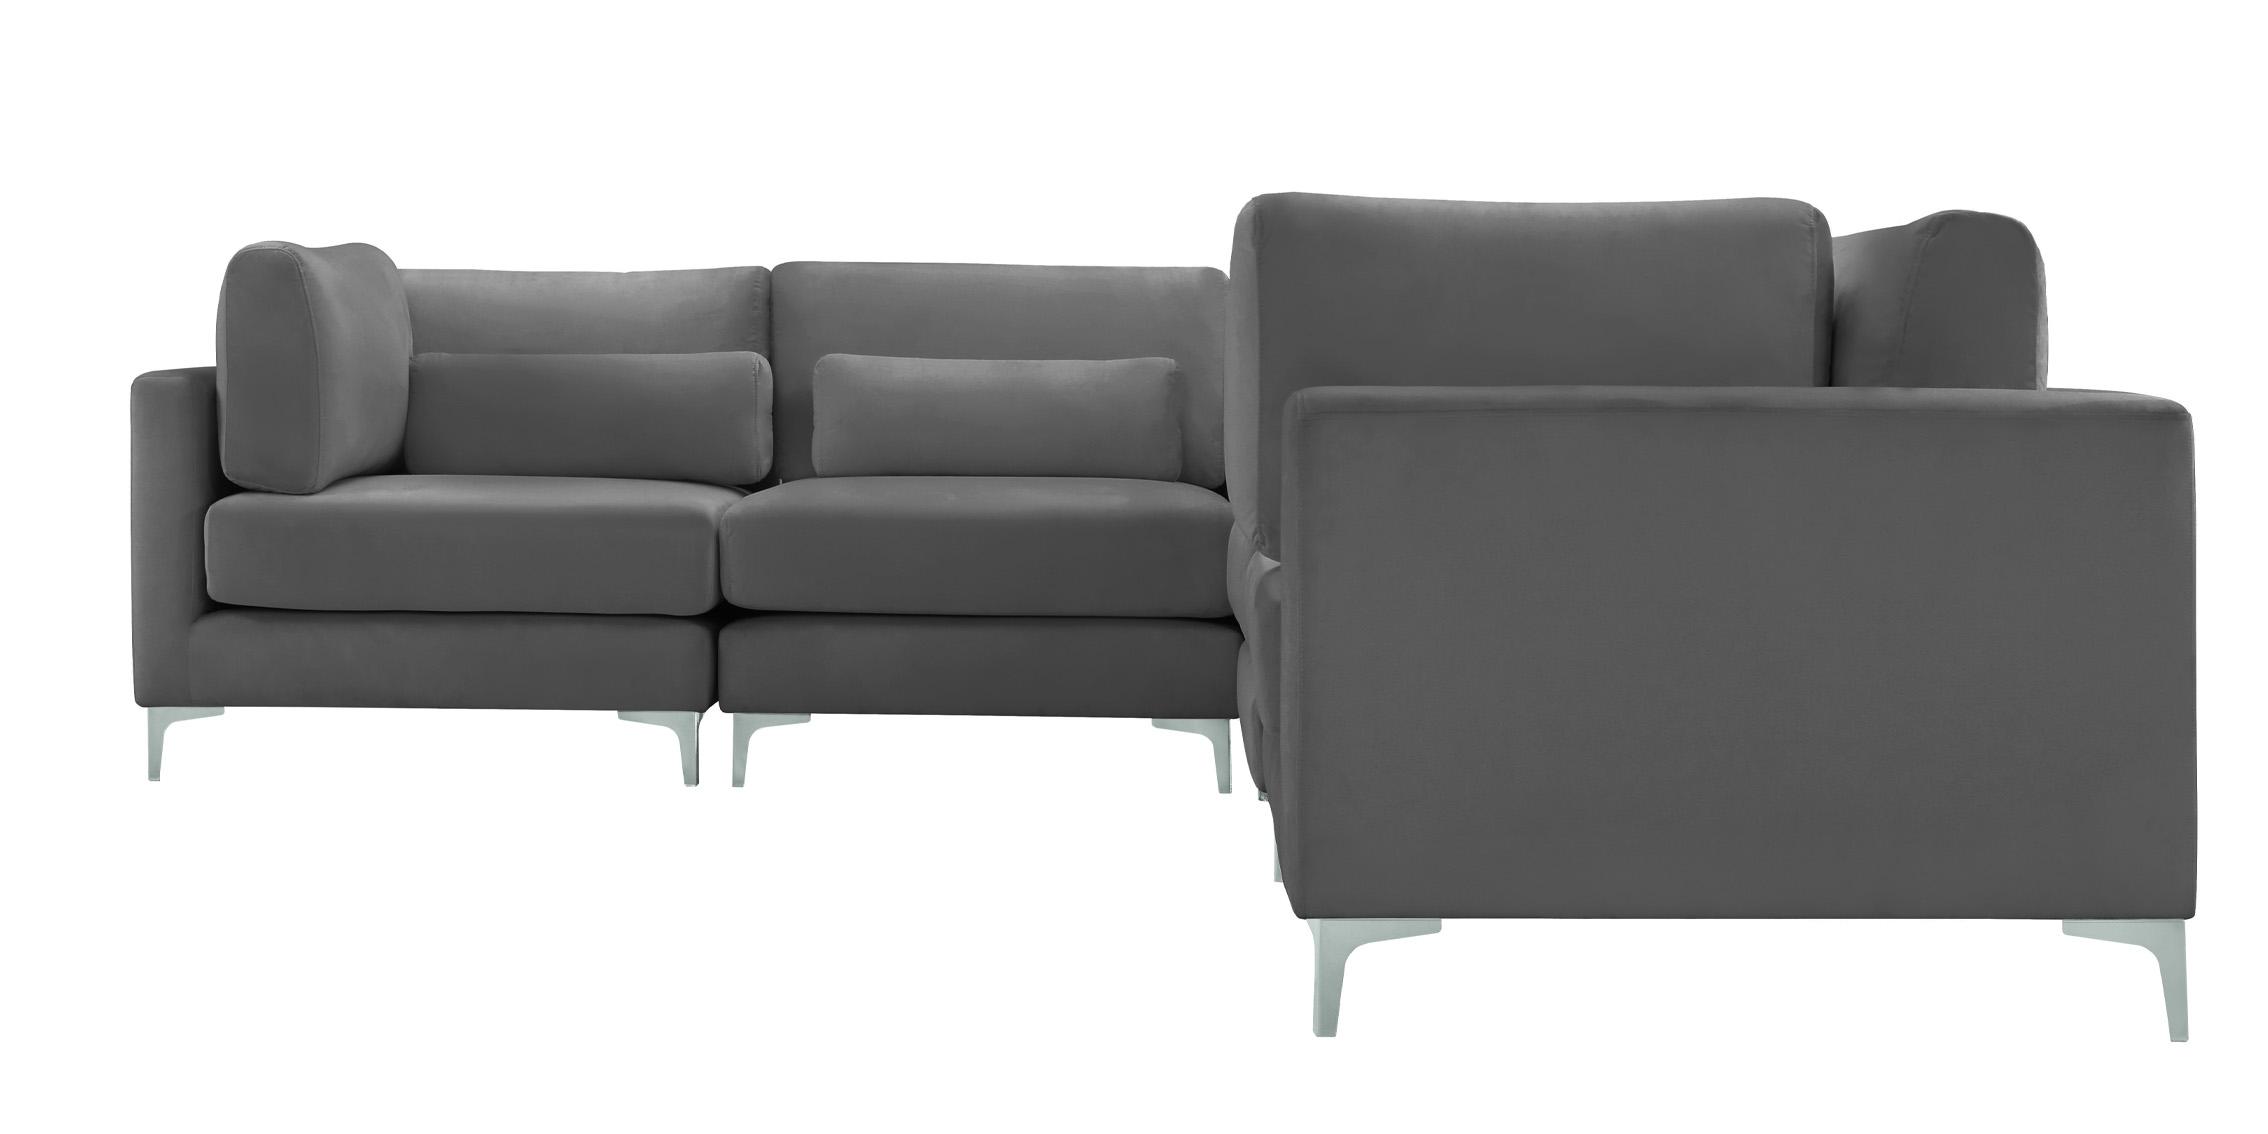 

    
605Grey-Sec6A Meridian Furniture Modular Sectional Sofa
